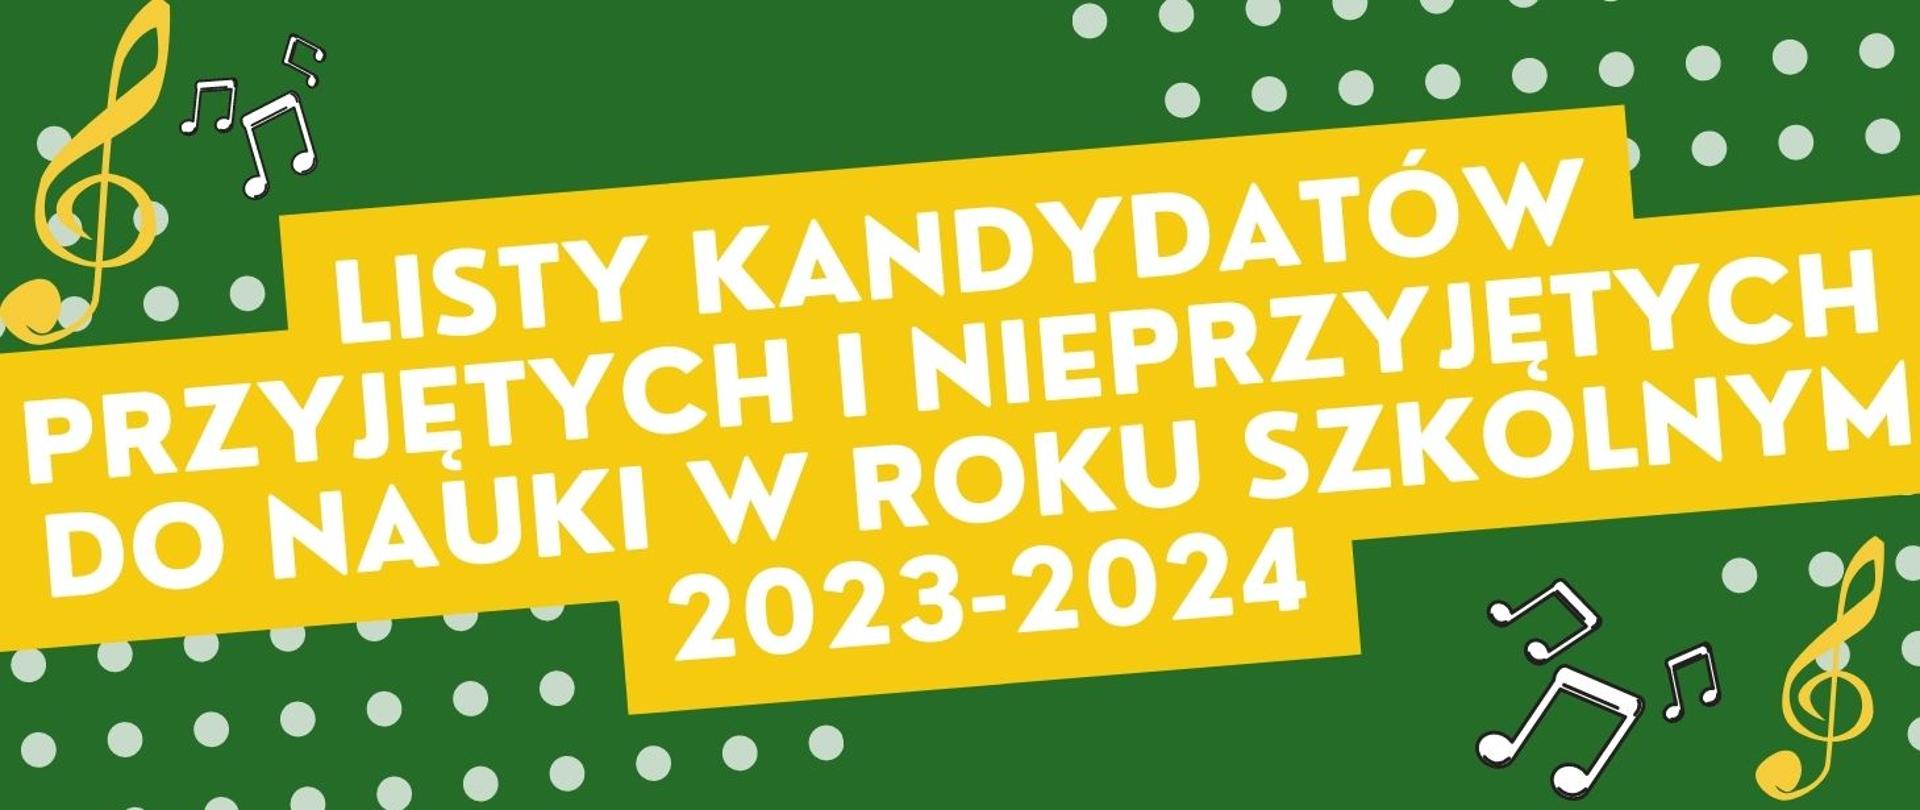 Panorama w kolorze zielono - żółtym z informacją białymi literami o listach kandydatów przyjętych i nieprzyjętych do nauki w roku szkolnym 2023/2024. Na panoramie klucze wiolinowe w kolorze żółtym oraz białe nuty.